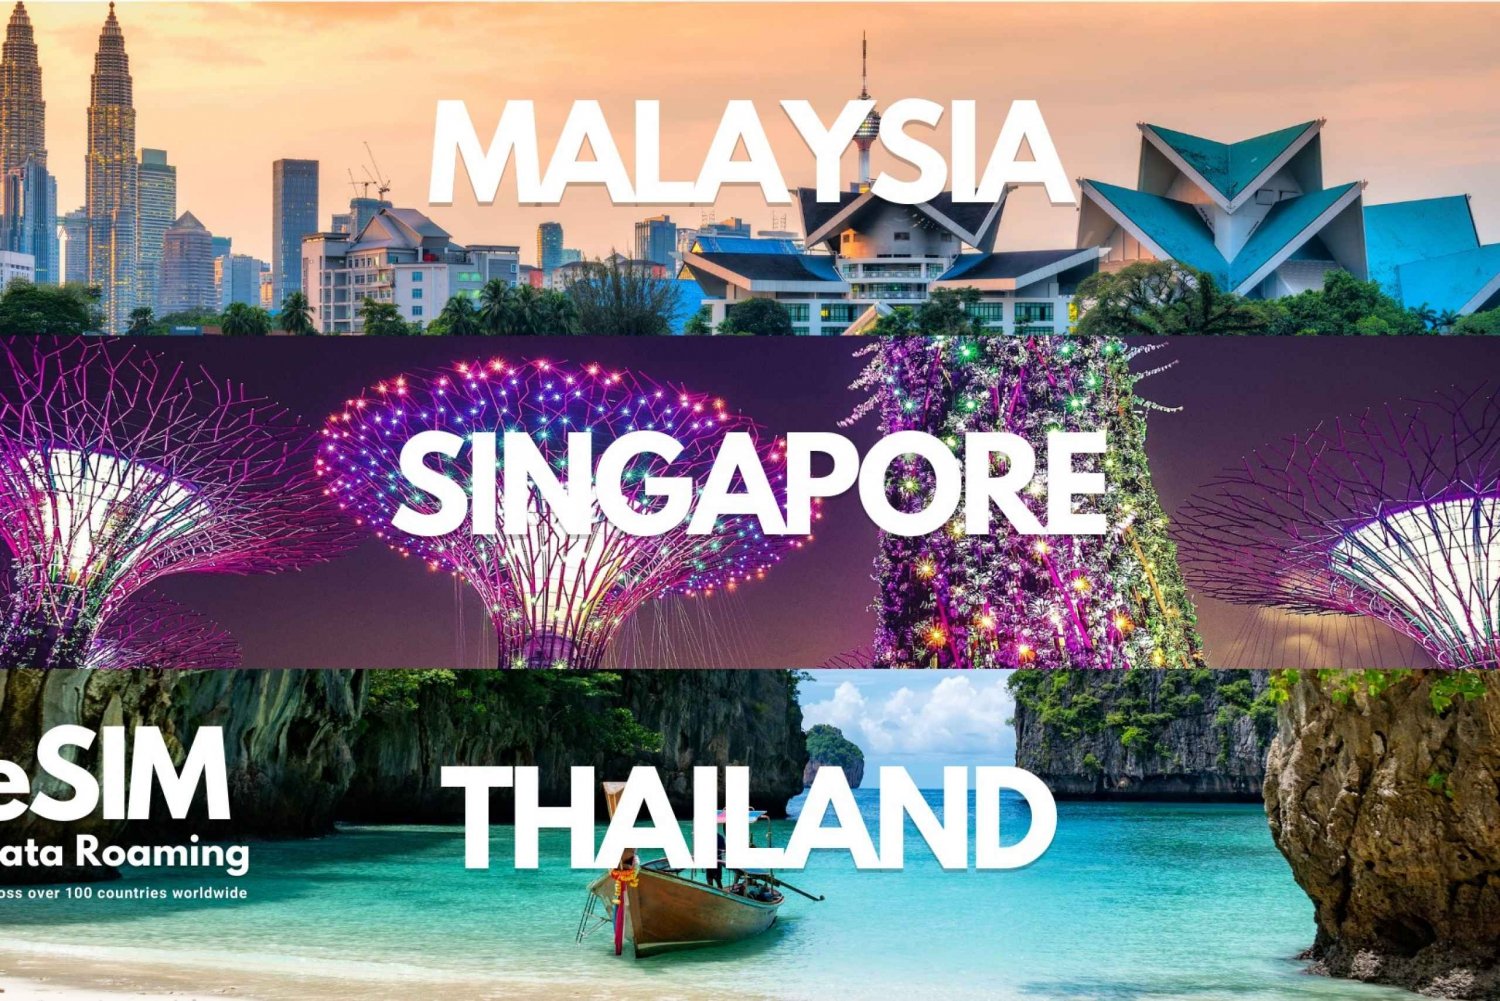 Singapur, Tailandia y Malasia: eSIM de datos móviles ilimitados